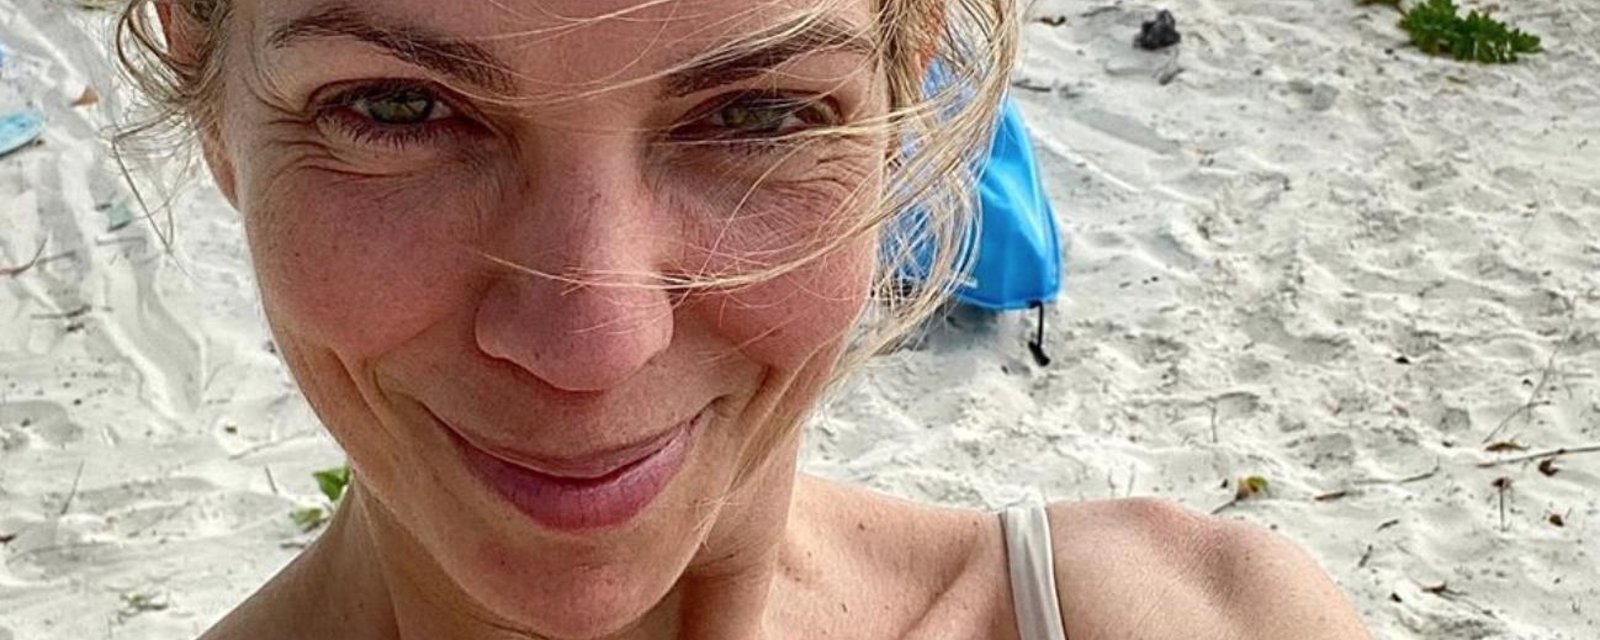 Jacynthe René est sublime en maillot sur le sable chaud des Bahamas